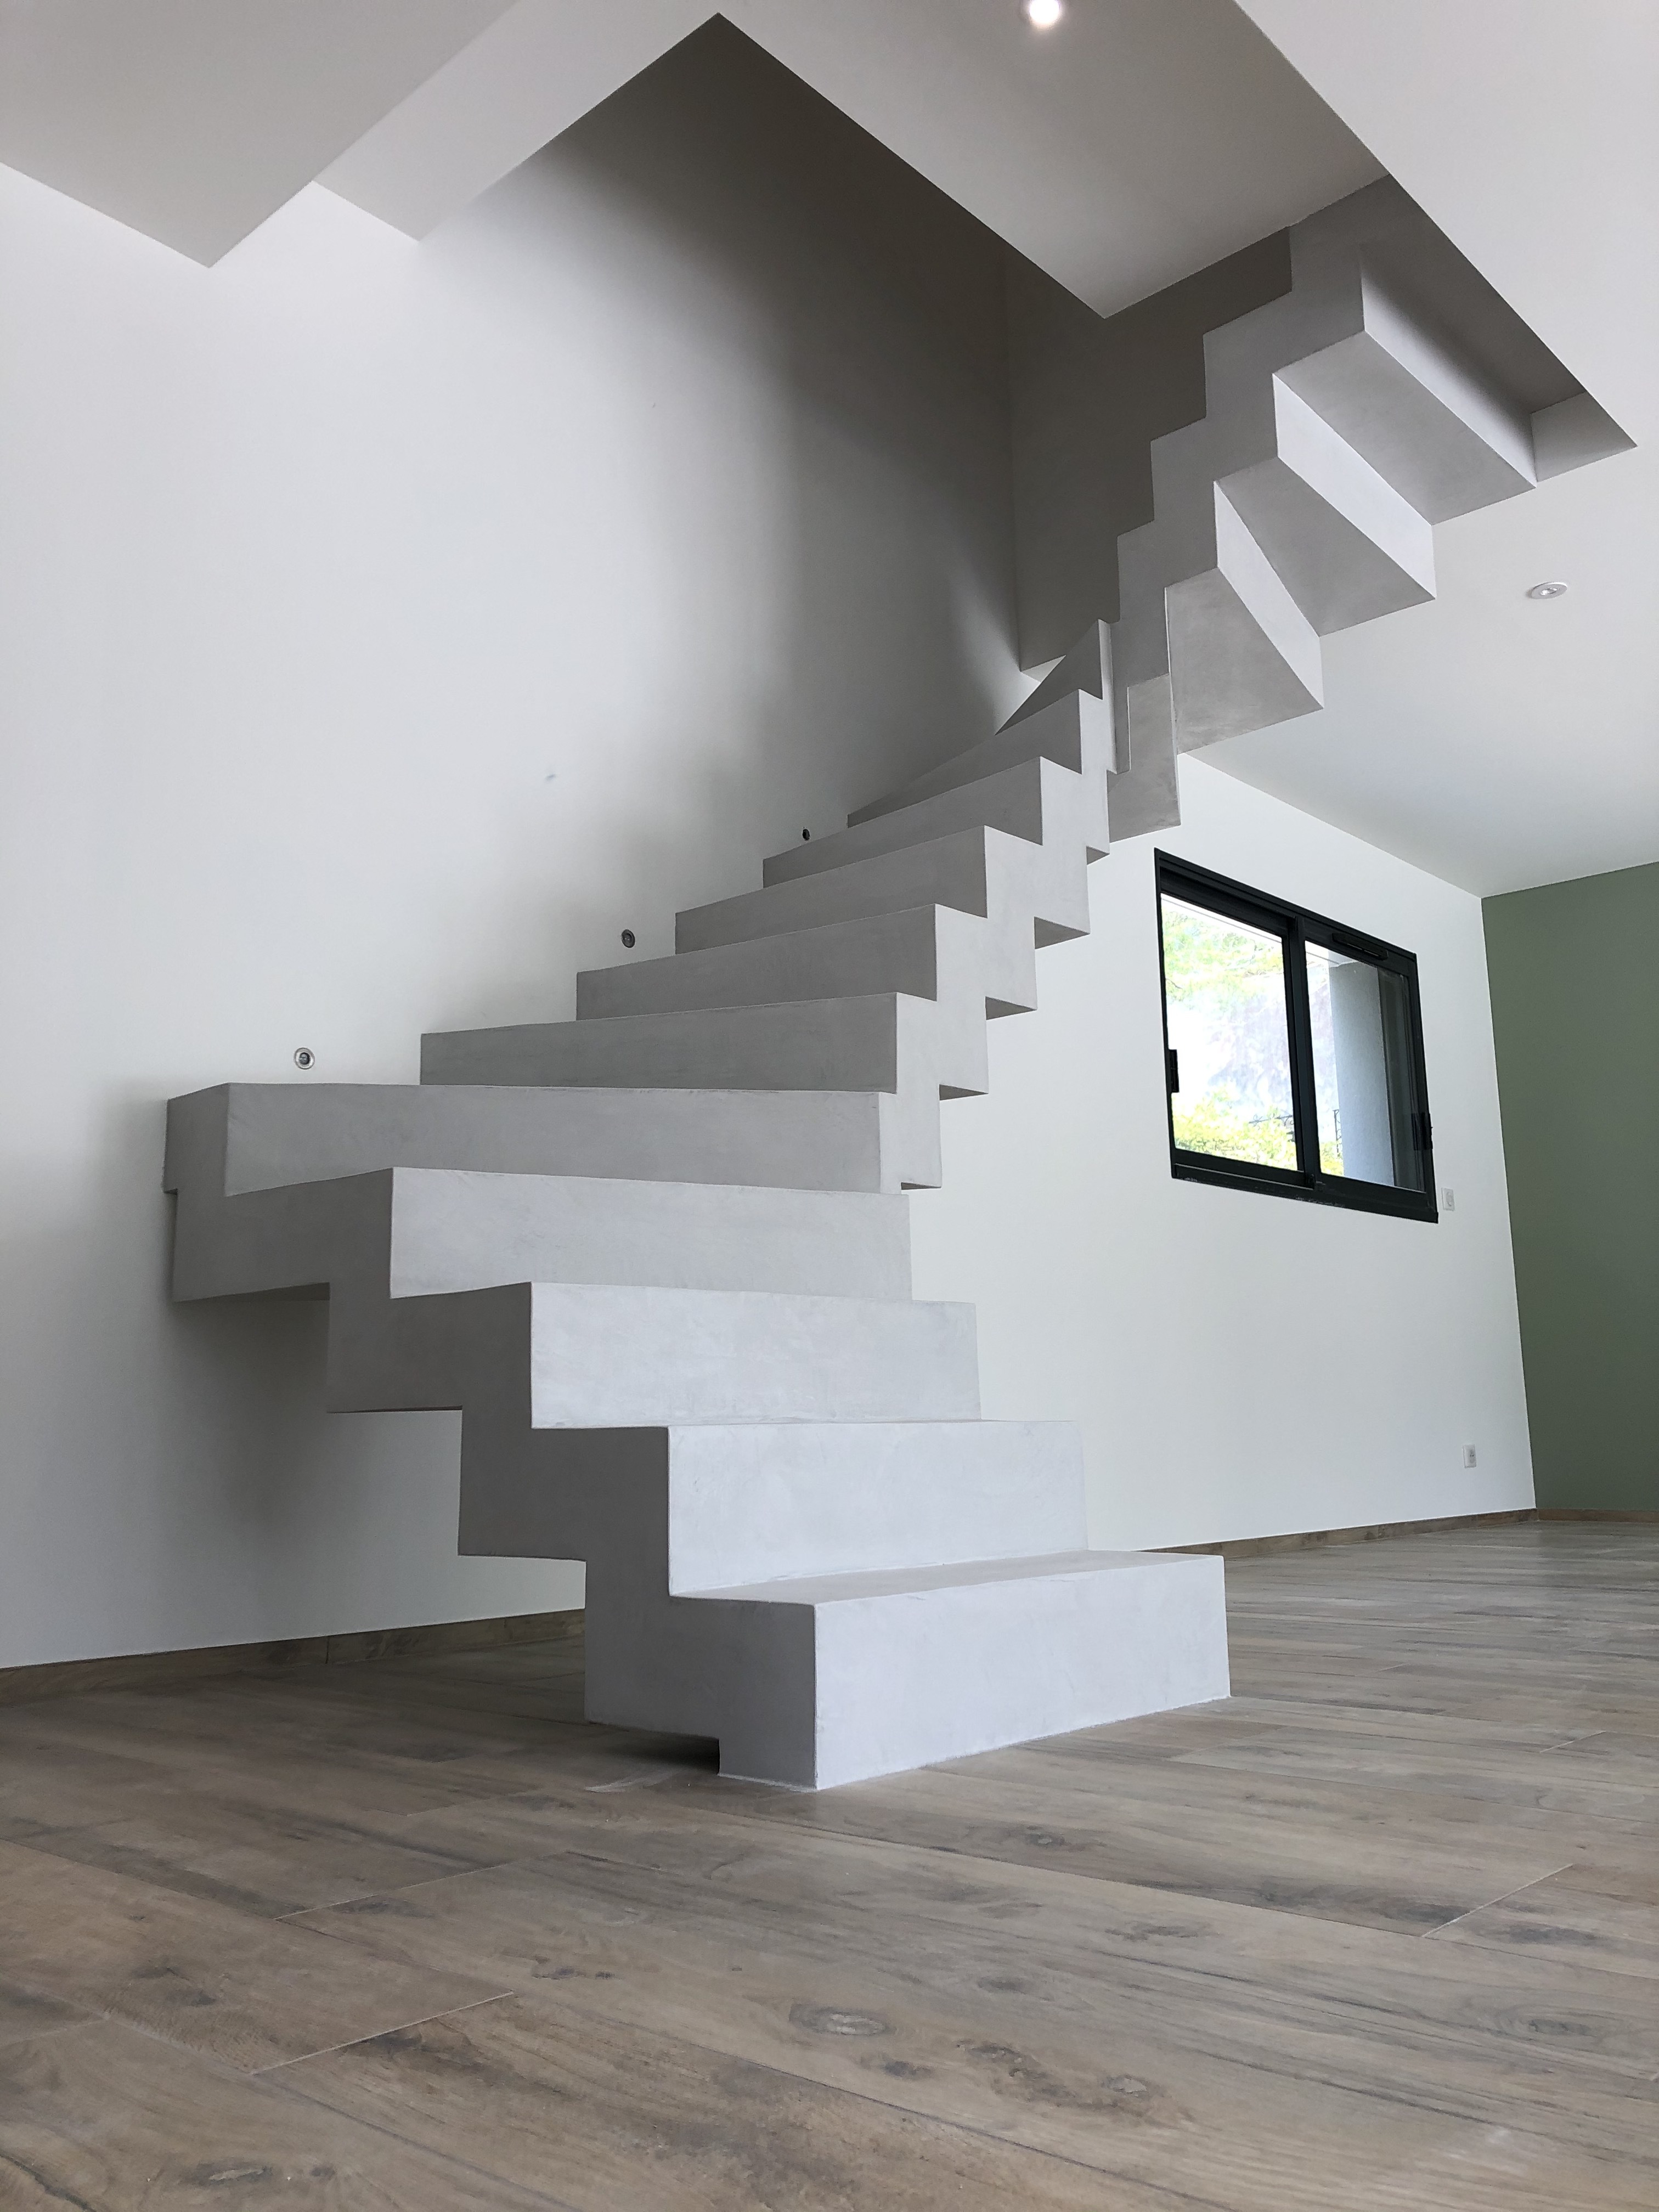 Béton ciré et design pour cet escalier